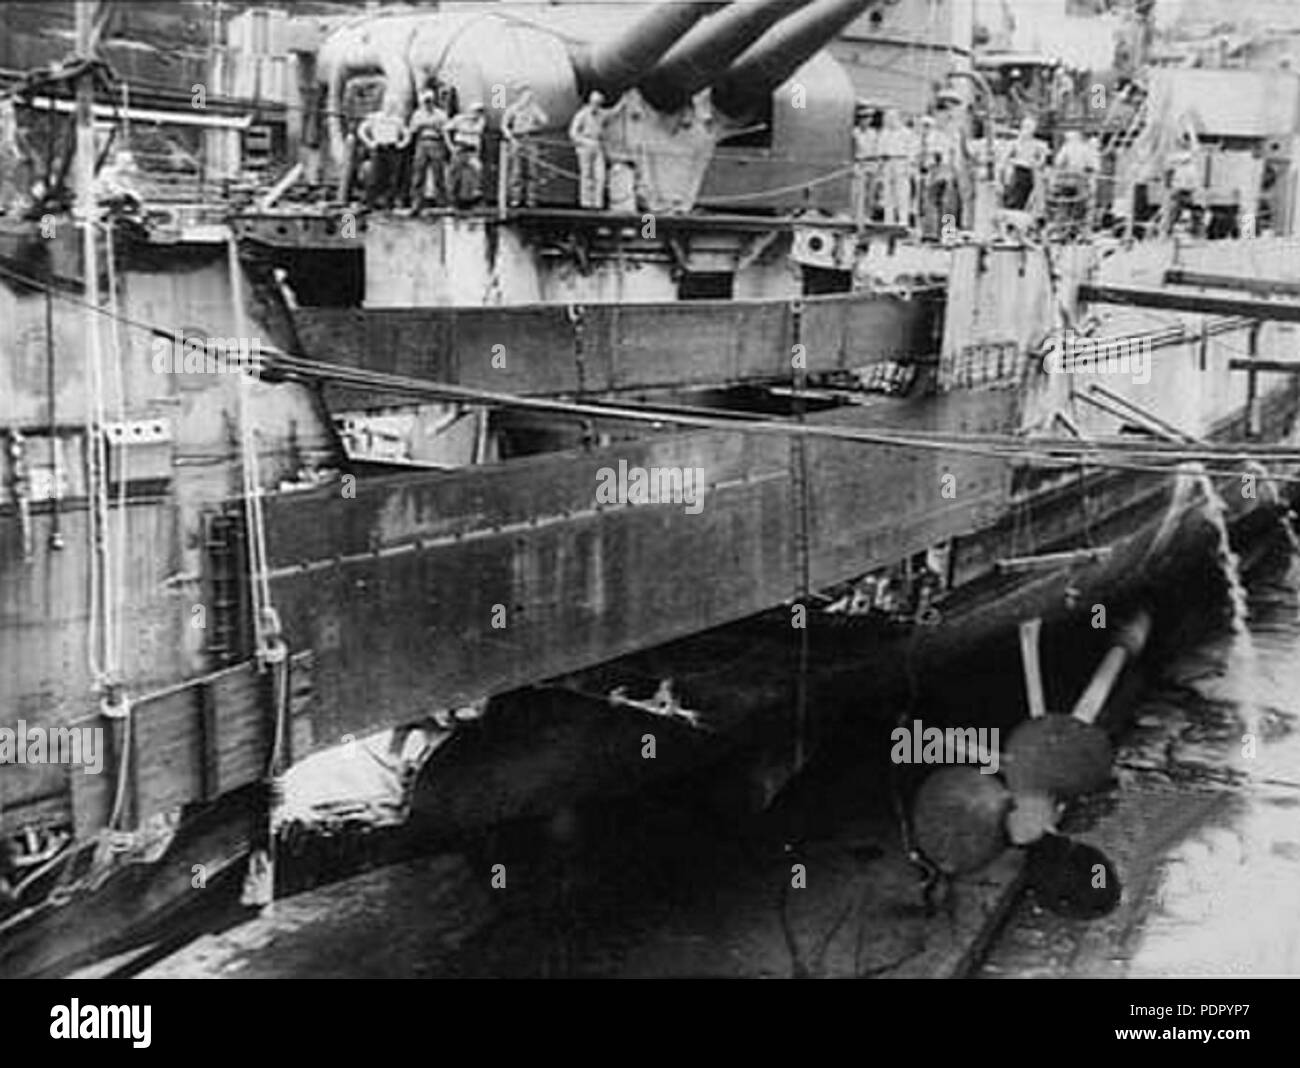 38 stern endommagées de USS Portland (CA-33) après bataille navale de Guadalcanal 1942 Banque D'Images